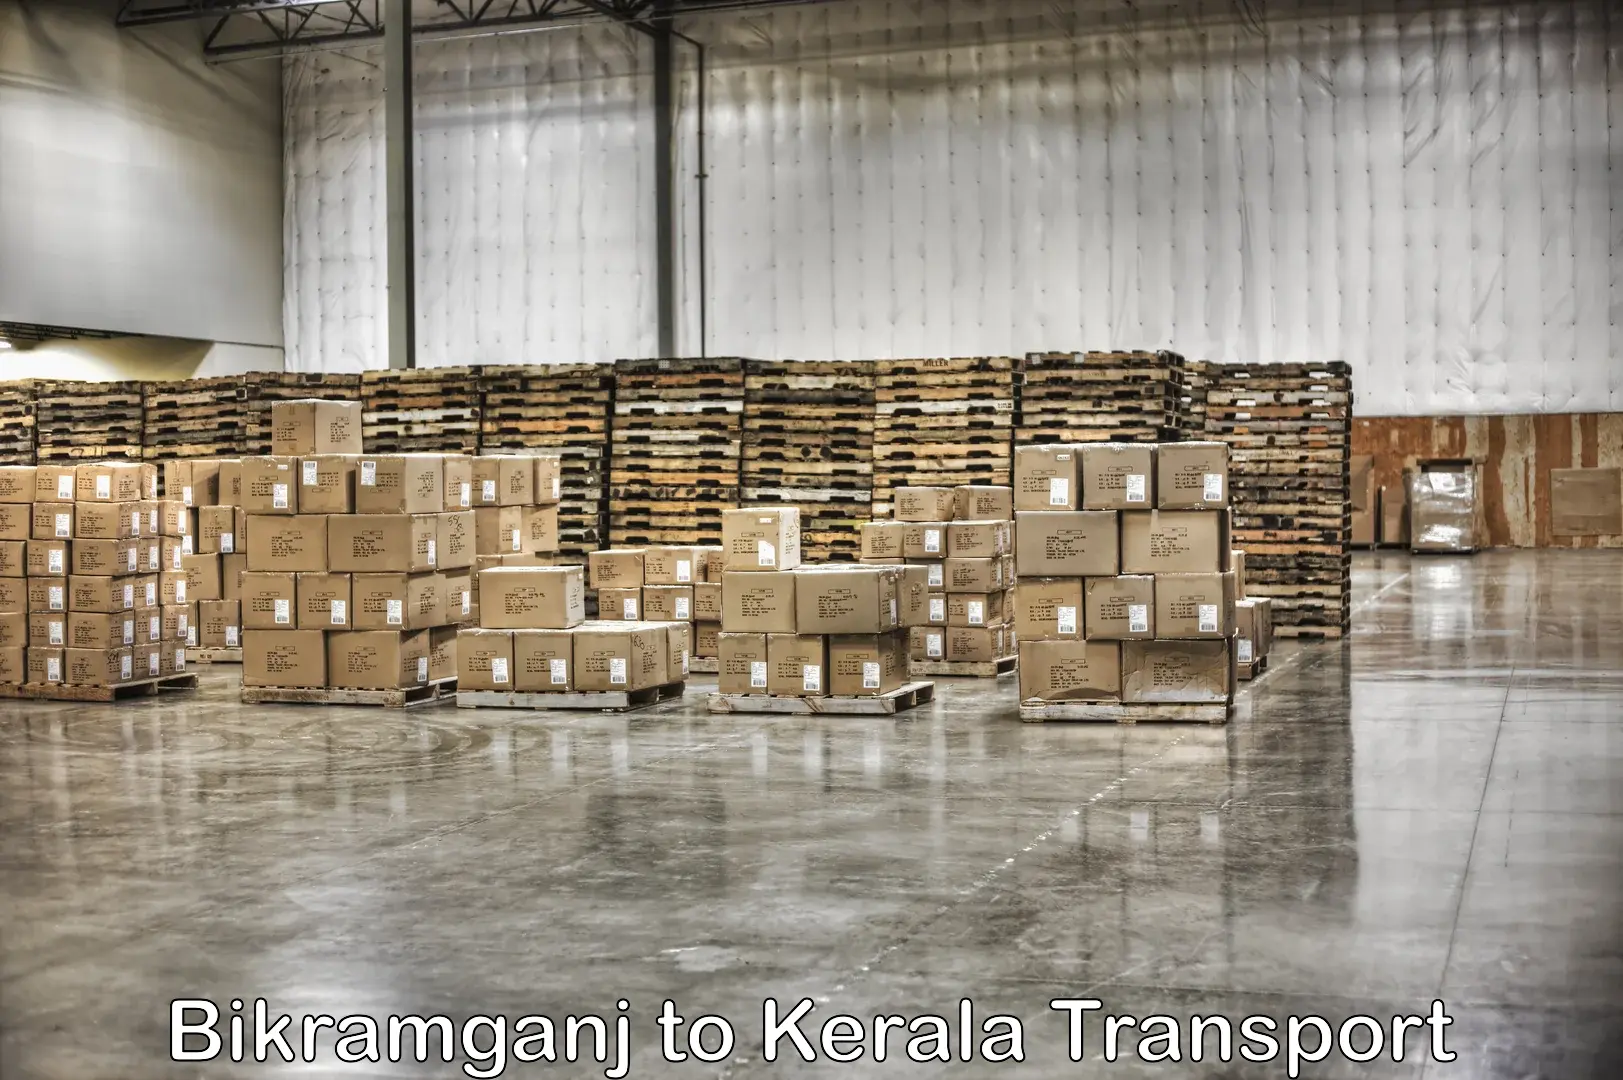 Daily parcel service transport Bikramganj to Kottayam